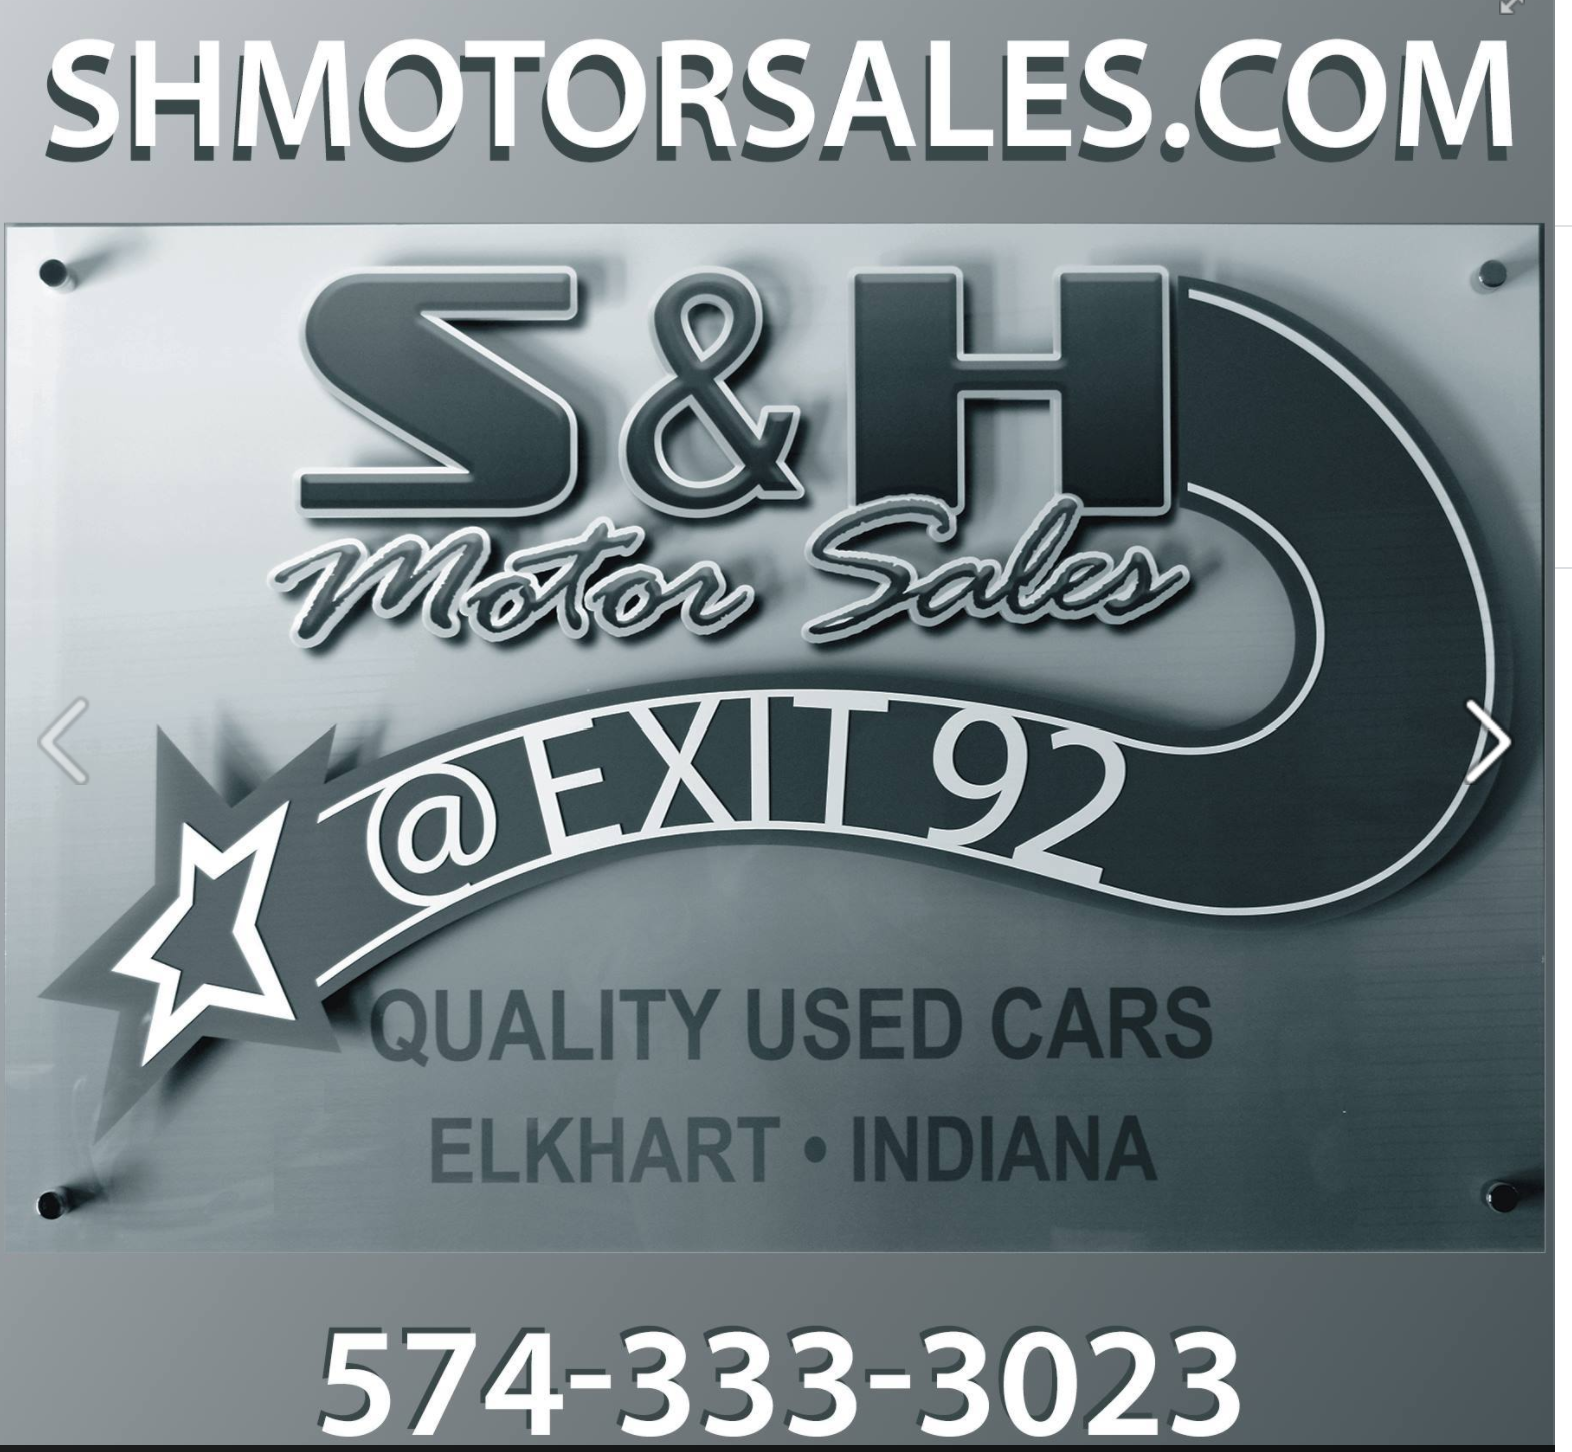 S&H Motor Sales Logo